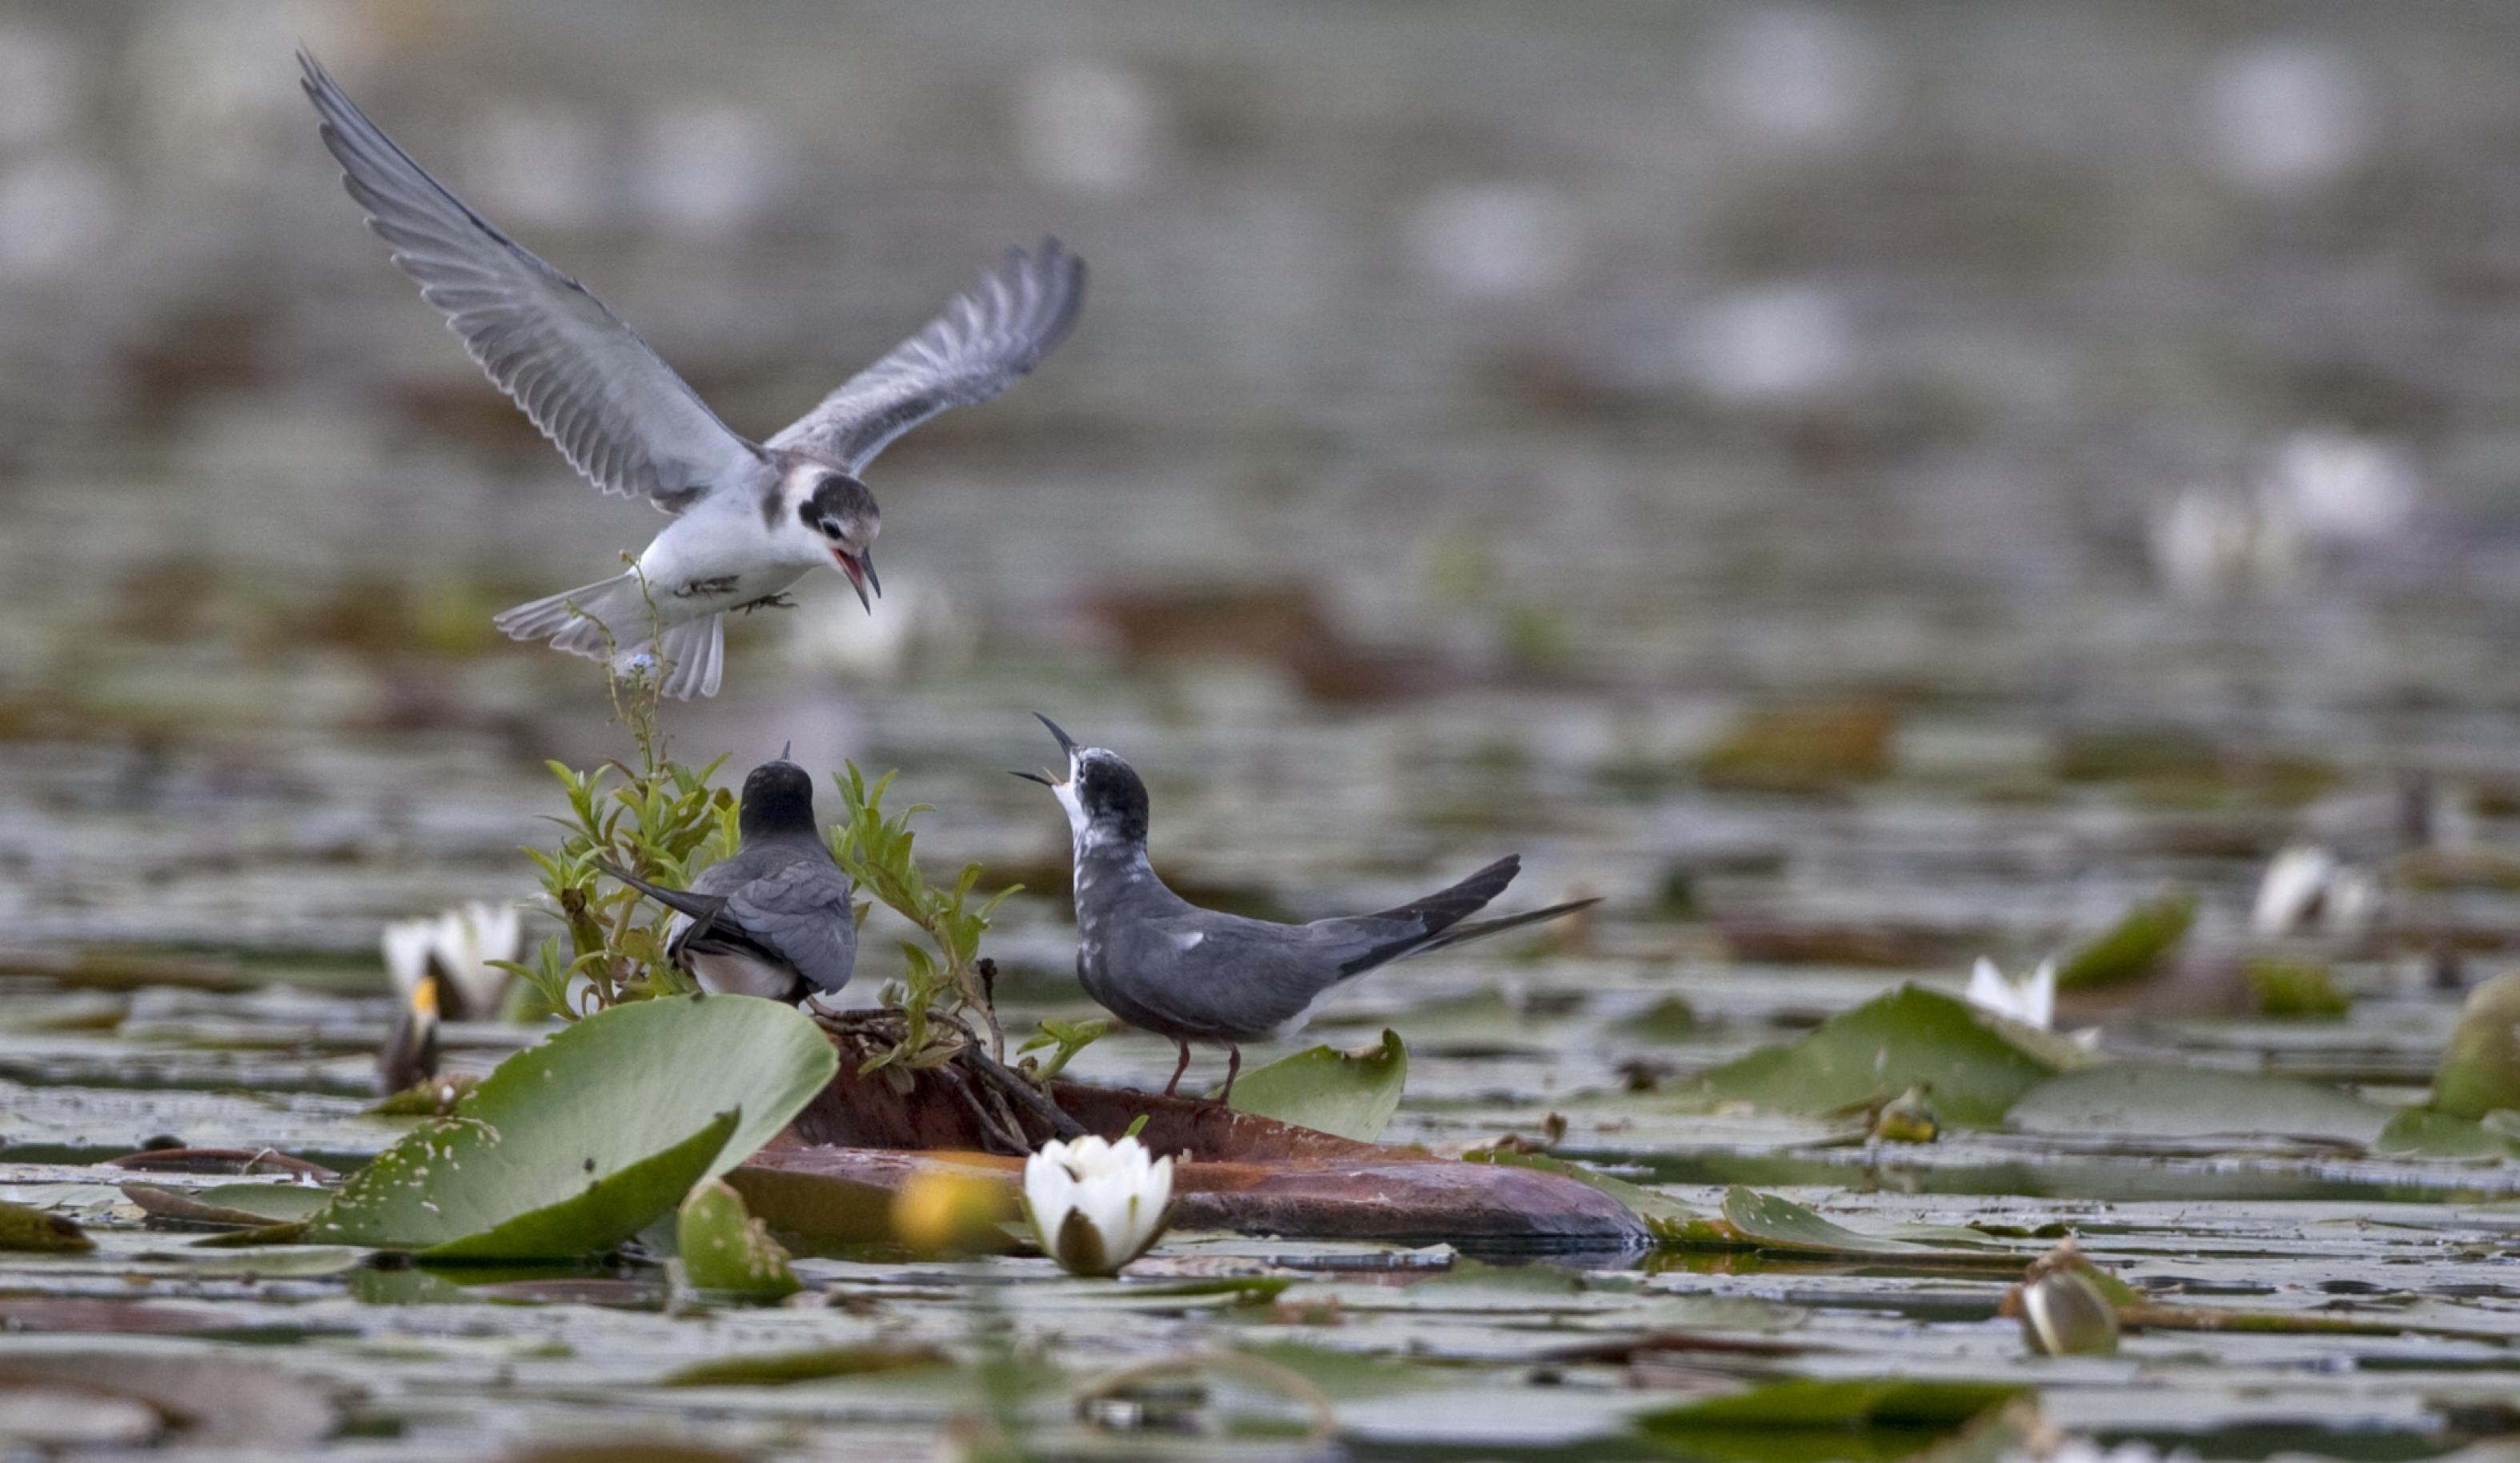 Elternvogel bringt Futter und flattert über Nest im Wasser.